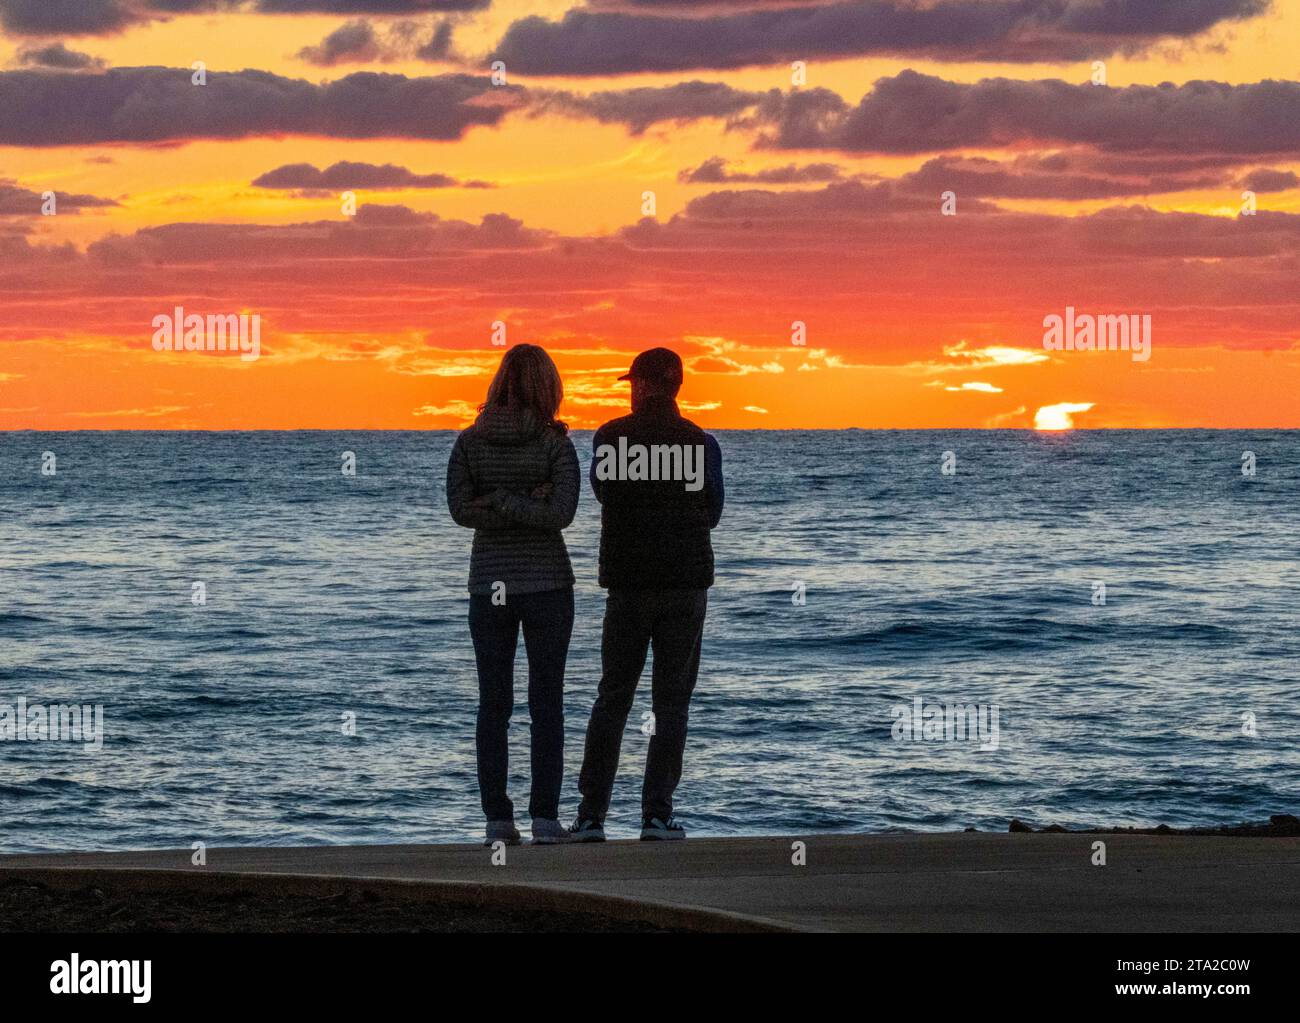 Un jeune couple regarde le coucher de soleil sur la mer Méditerranée, Paphos, Chypre Banque D'Images